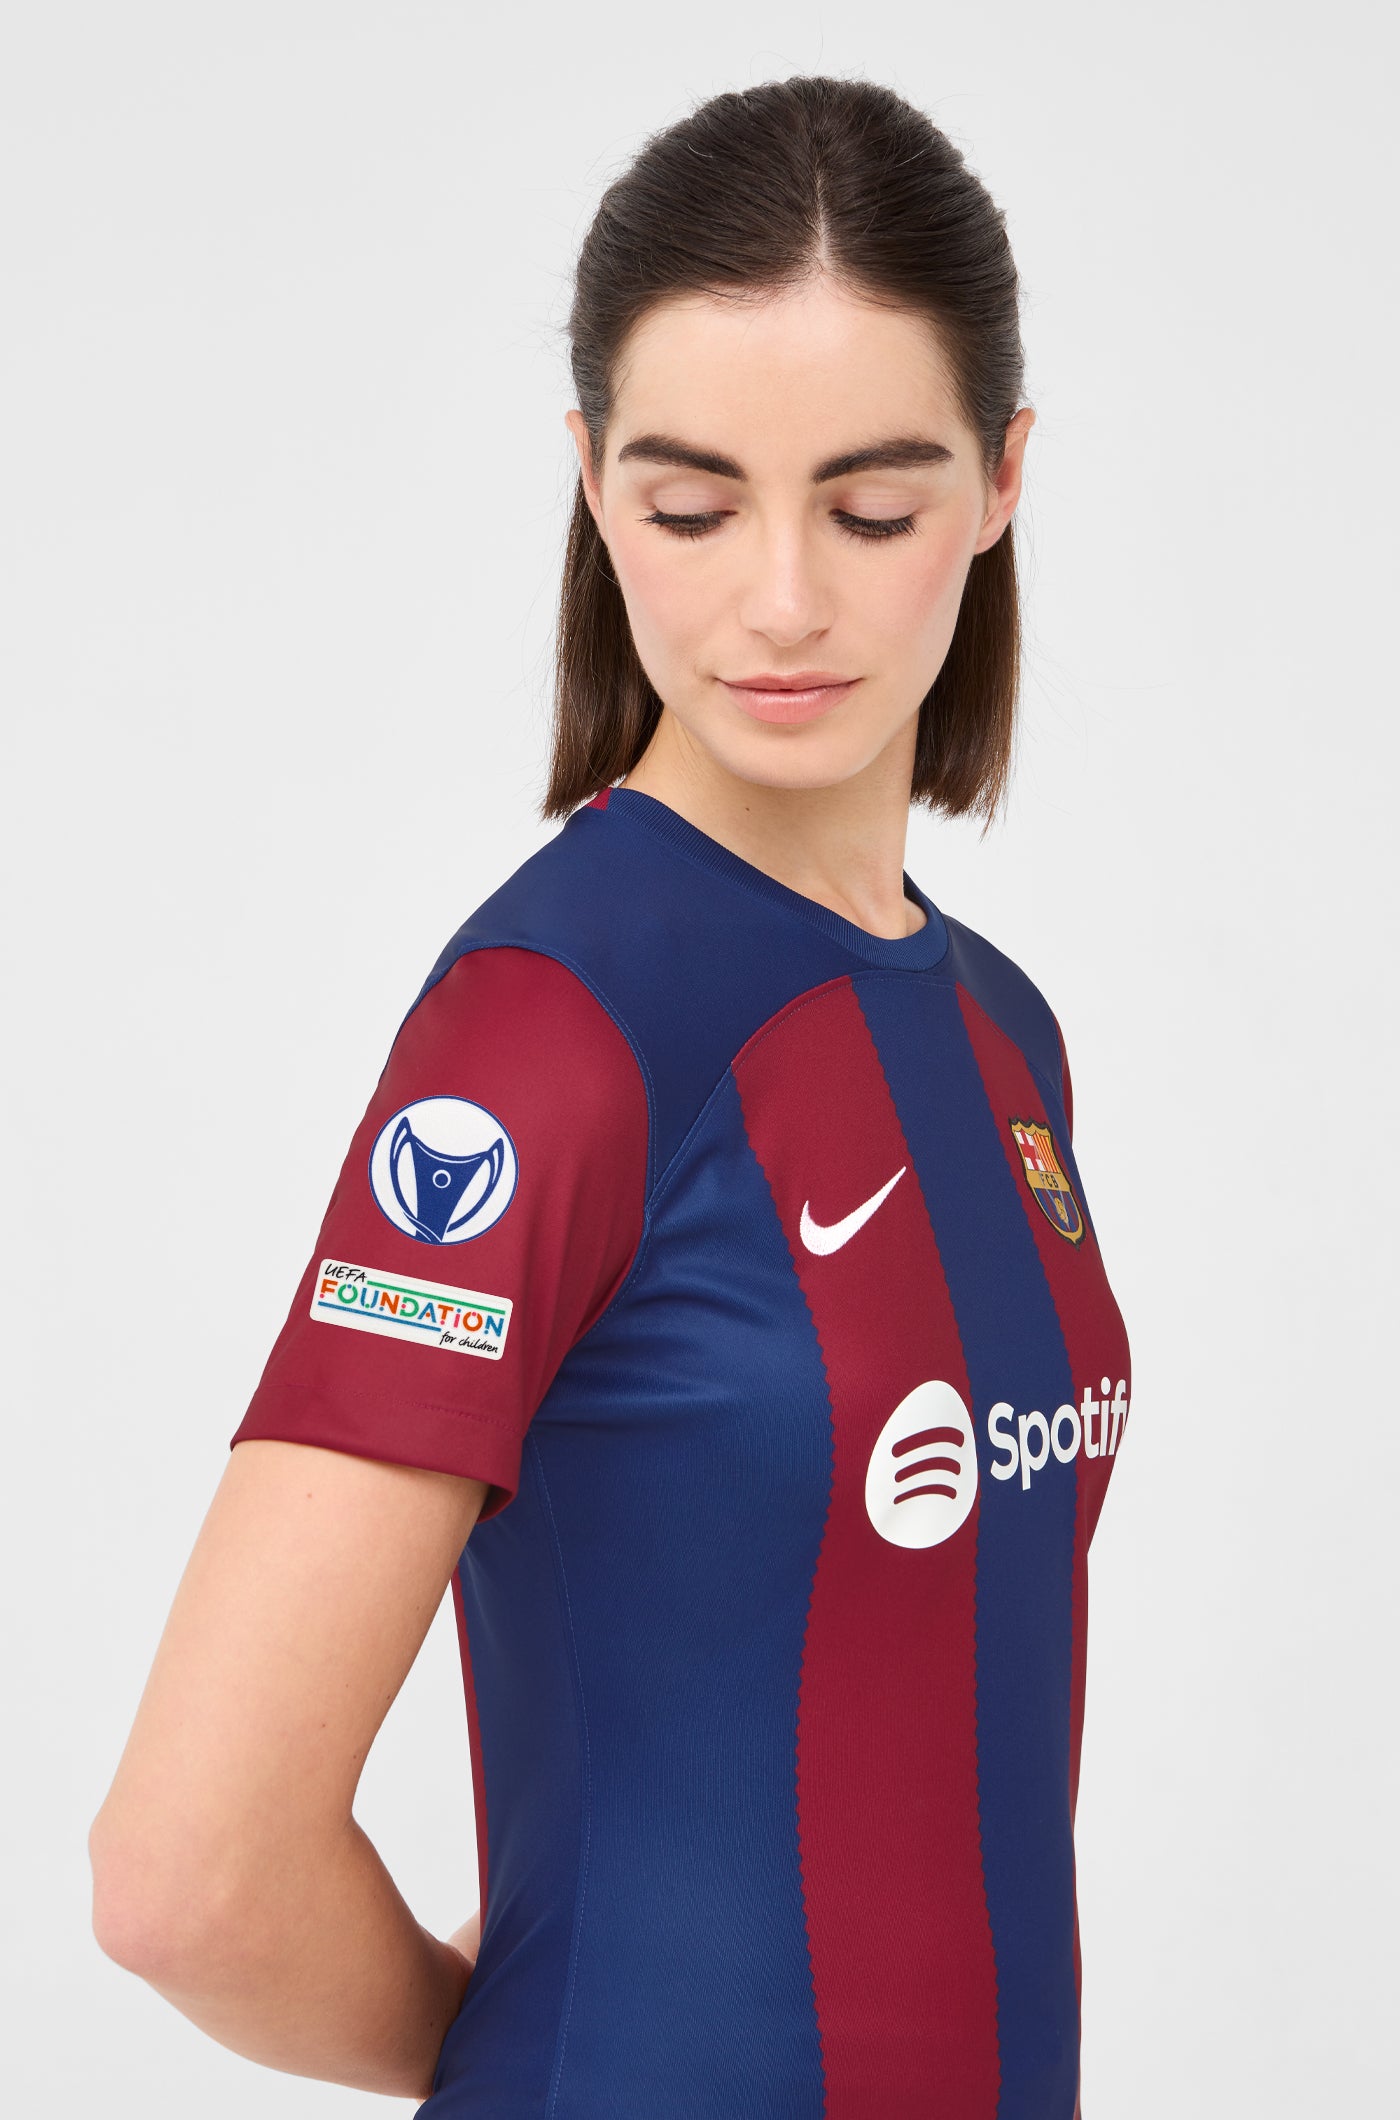 UWCL FC Barcelona home shirt 23/24 - Women - ROLFÖ